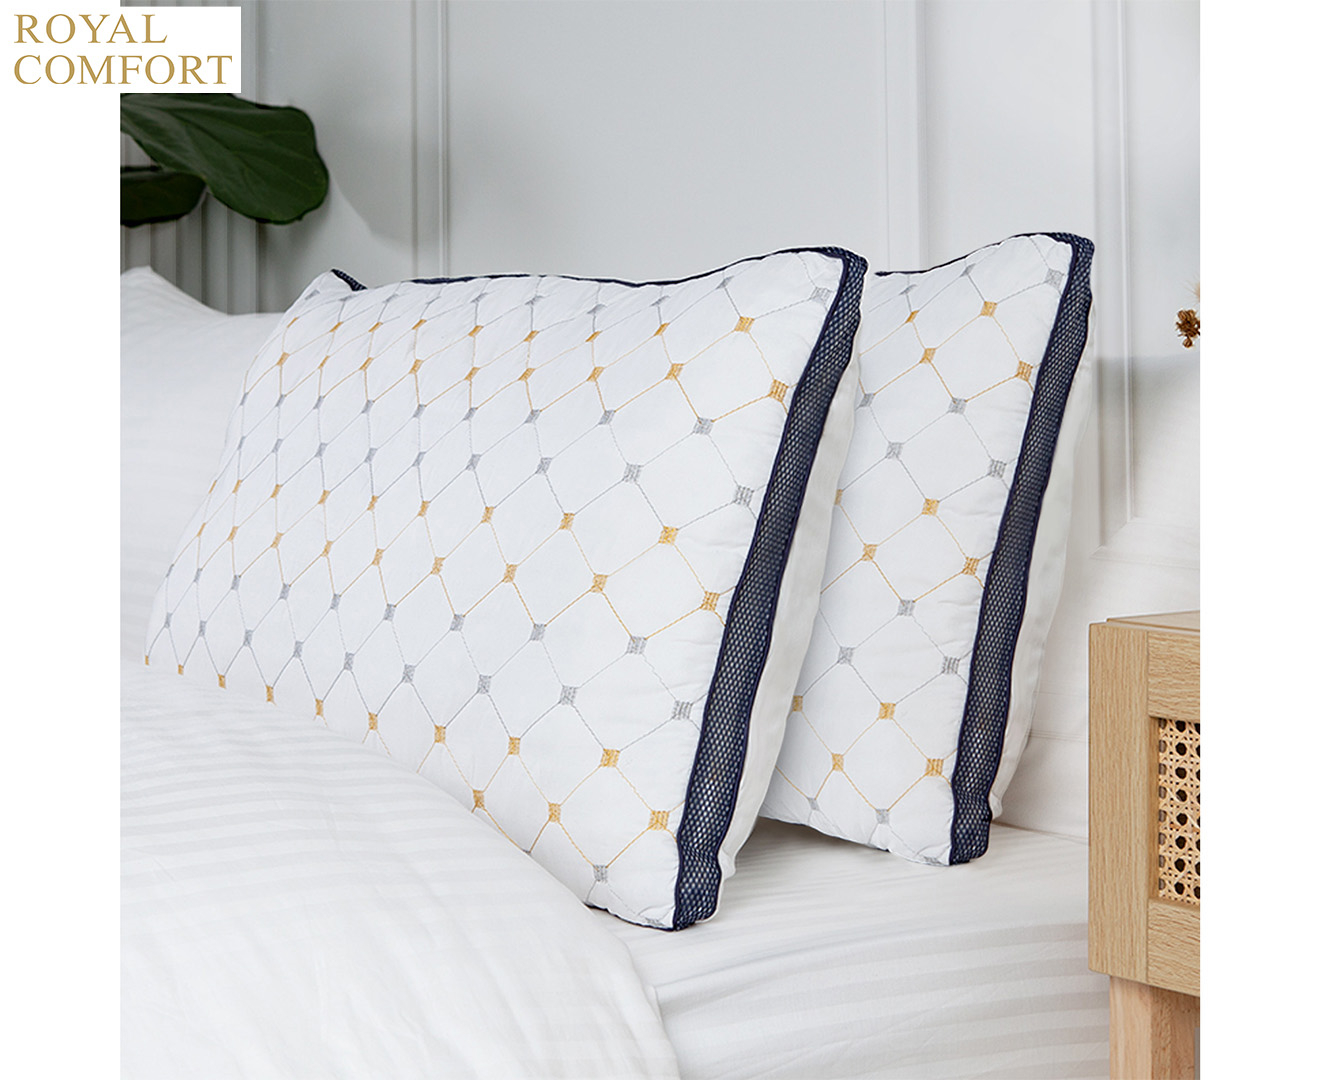 Royal Comfort Chiro Comfort Air Mesh Pillows 4 Pack